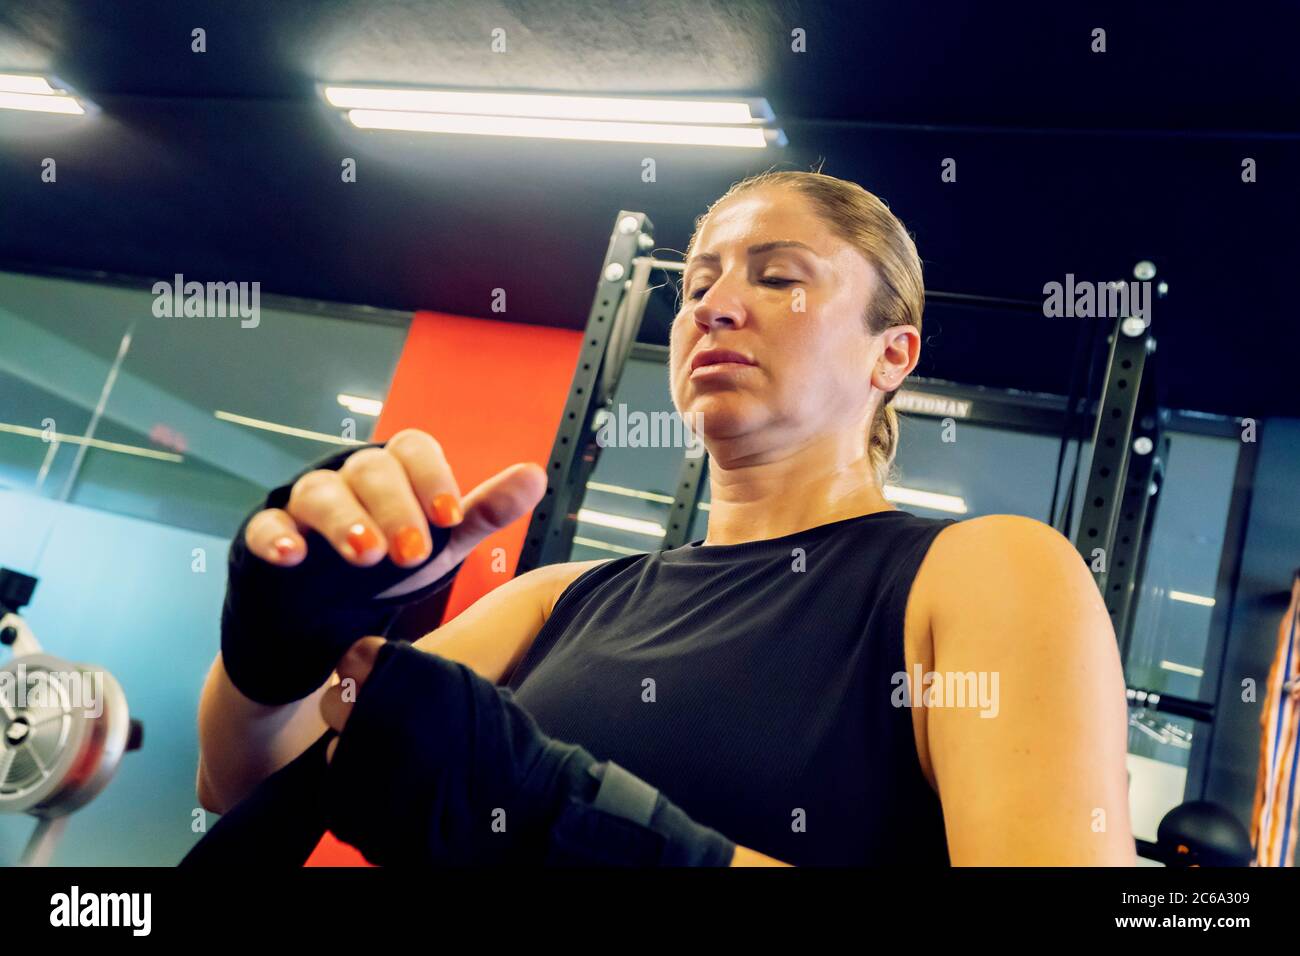 Frau im Fitness-Salon bereitet sich auf ihr Kickboxen-Training vor. Sie trägt Schwarz und bindet eine Art Verband an ihre Hände Stockfoto